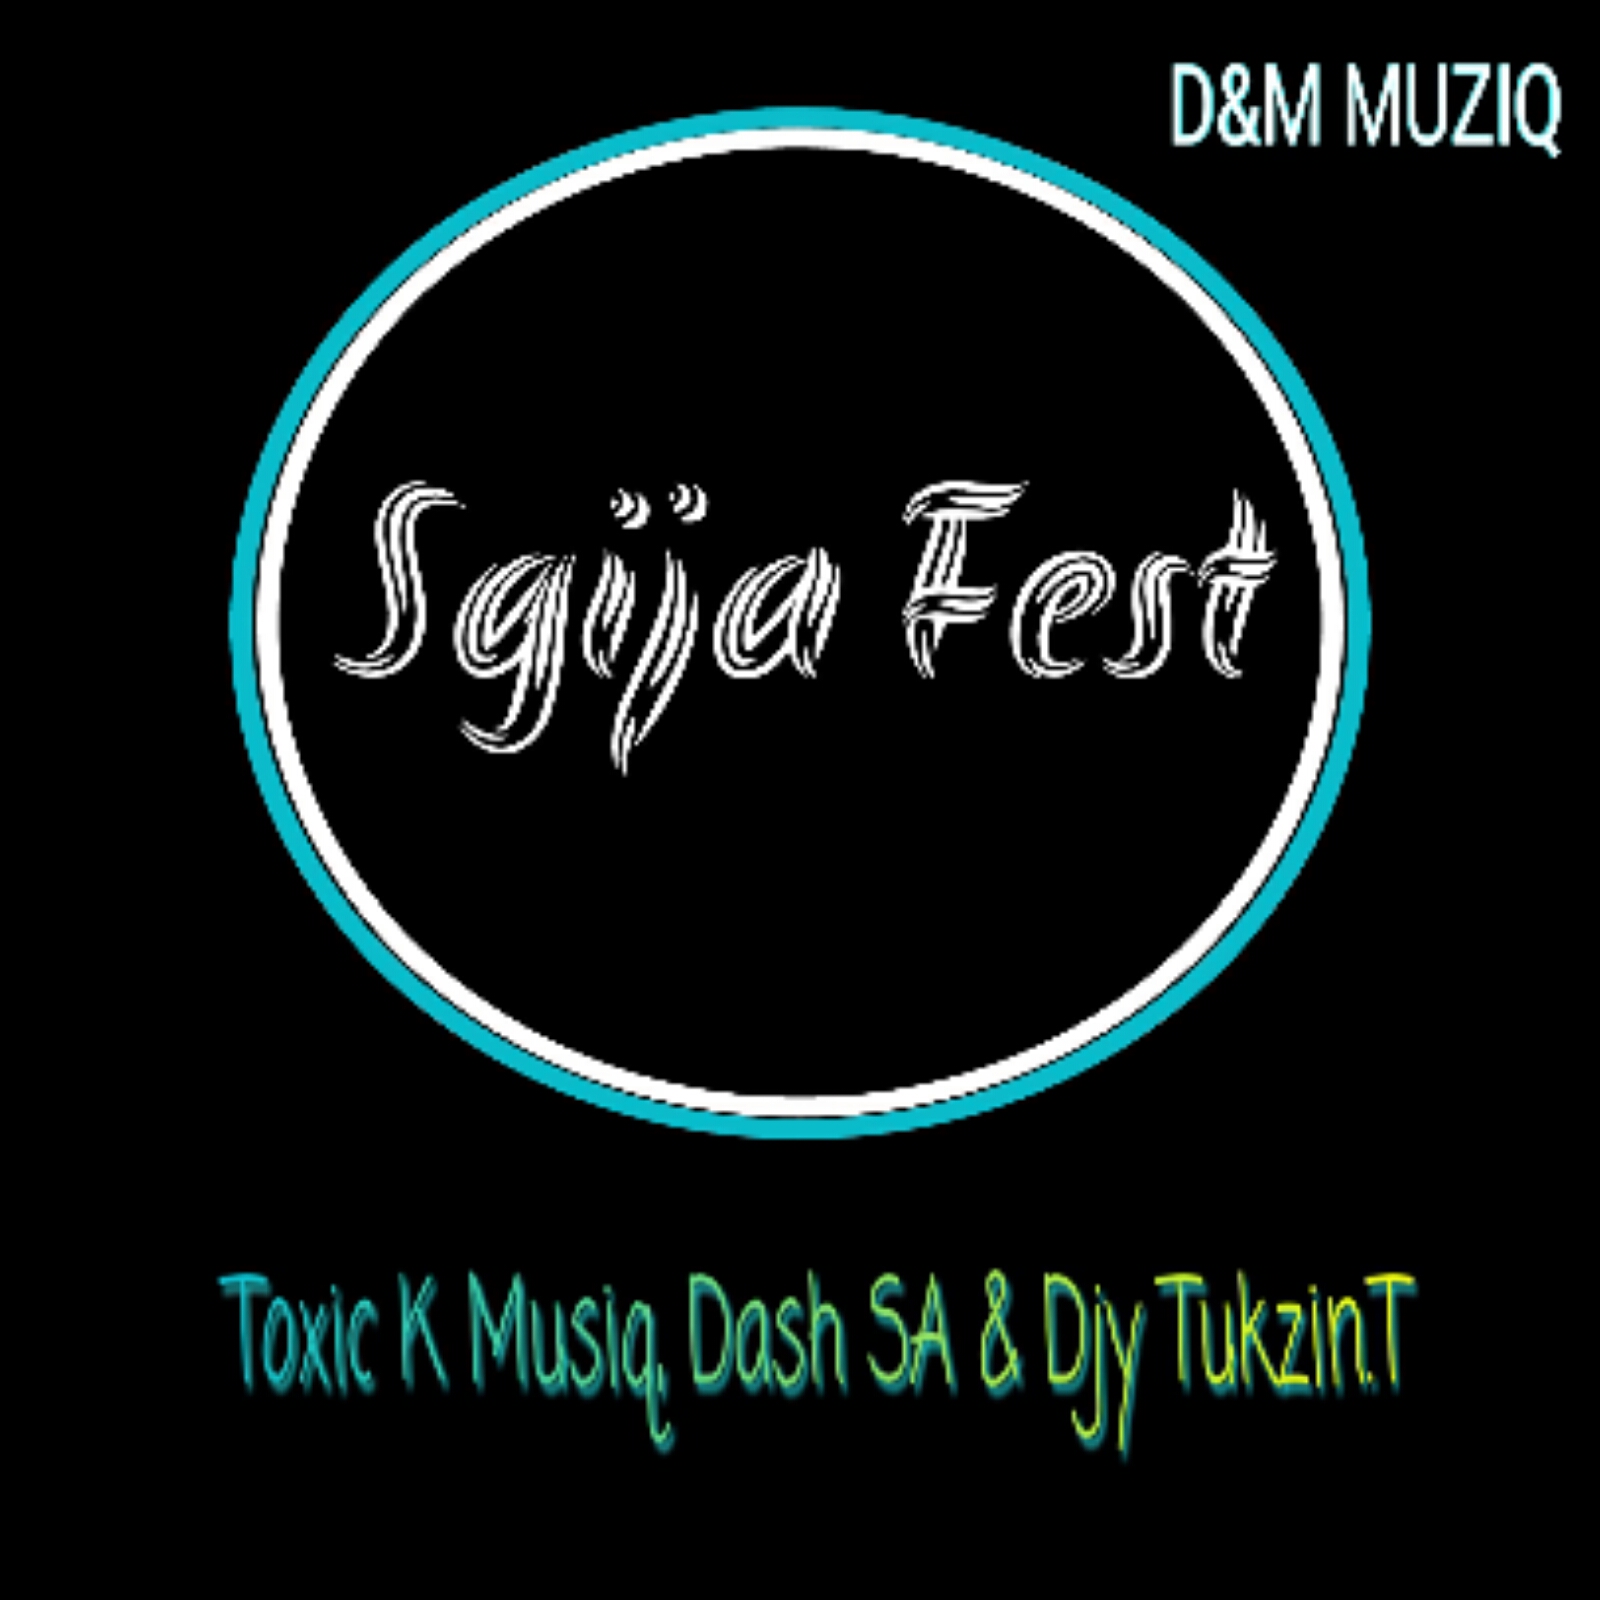 Sgija Fest - Djy Tukzin.T, Toxic K Musiq & Dash SA